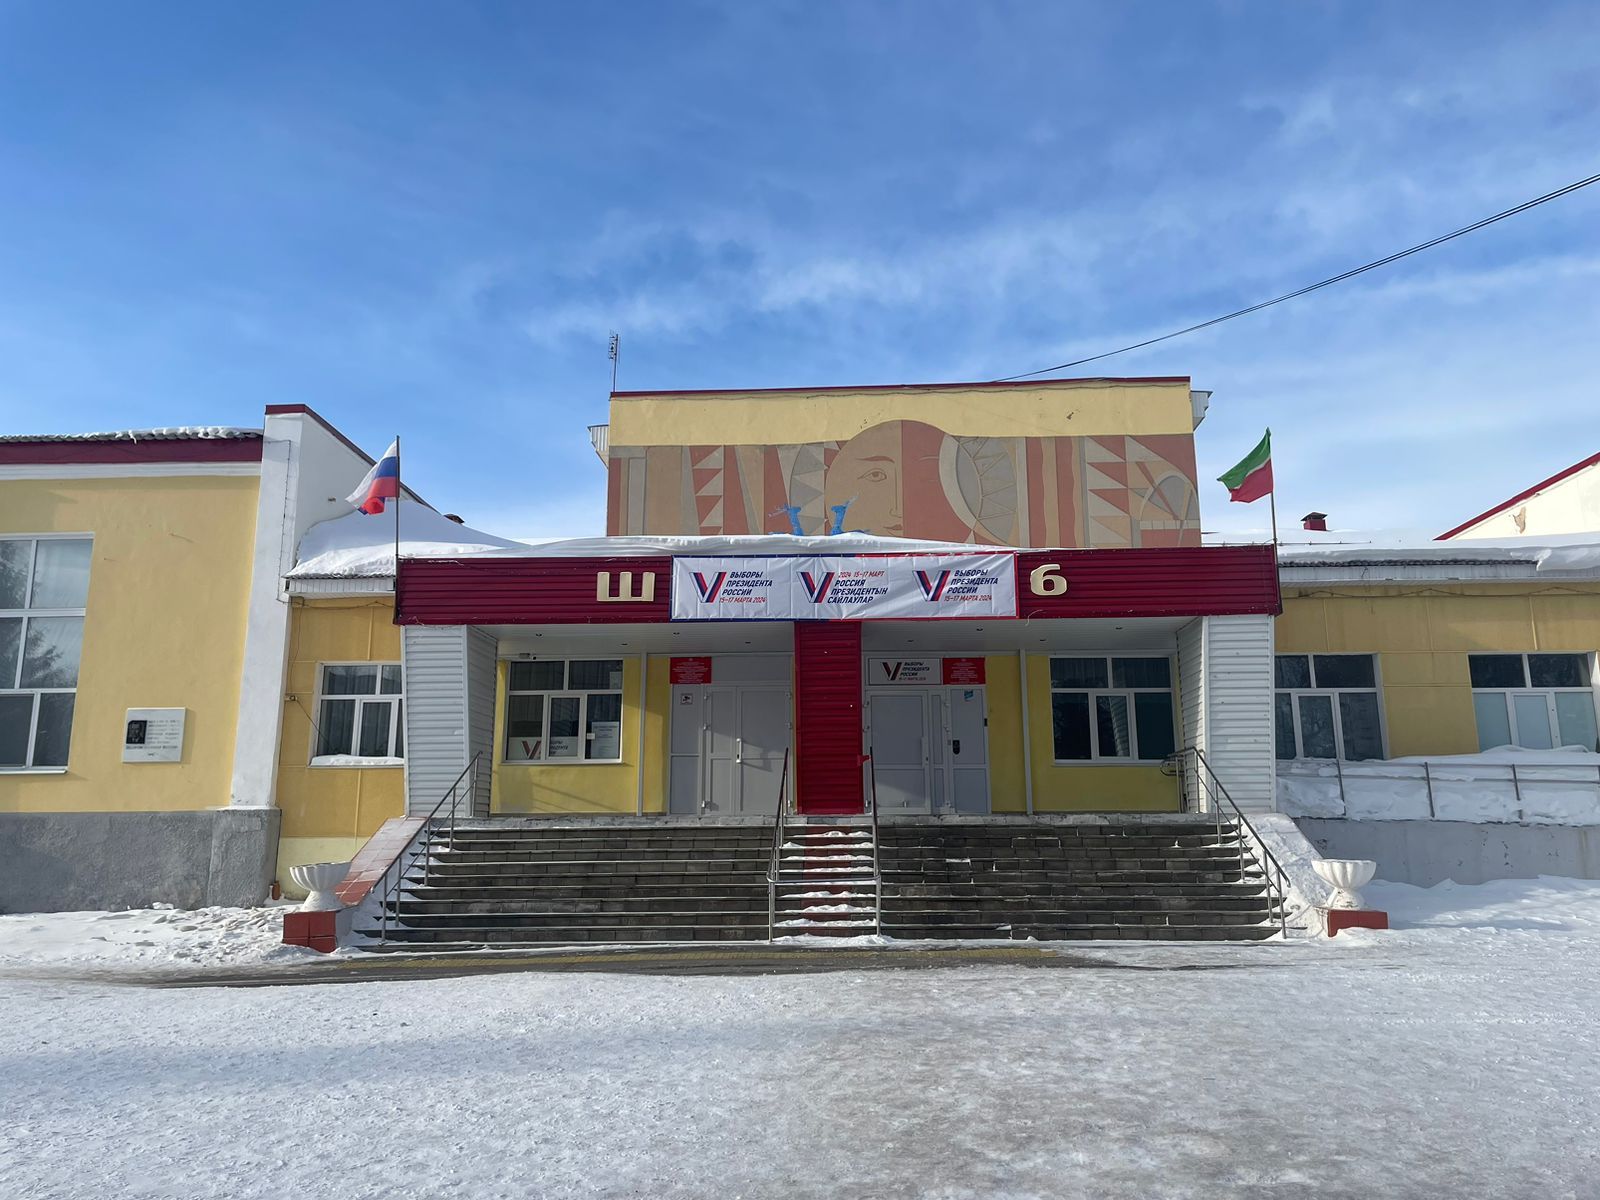 46 избирательных участков в Бугульминском районе открыты для голосования граждан